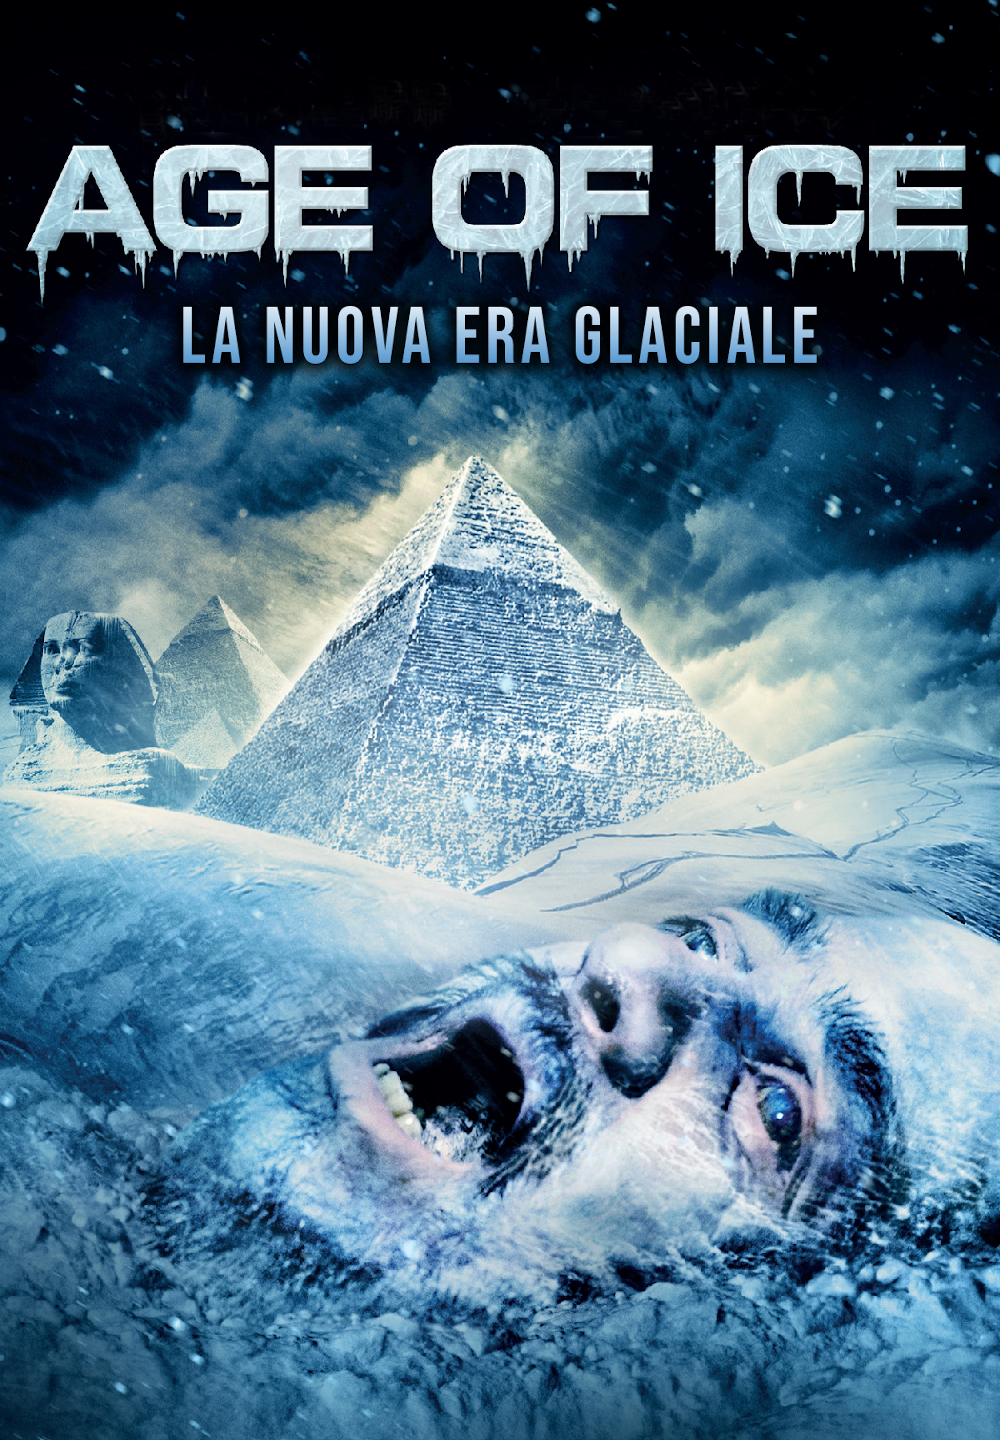 Age Of Ice – La nuova era glaciale [HD] (2014)